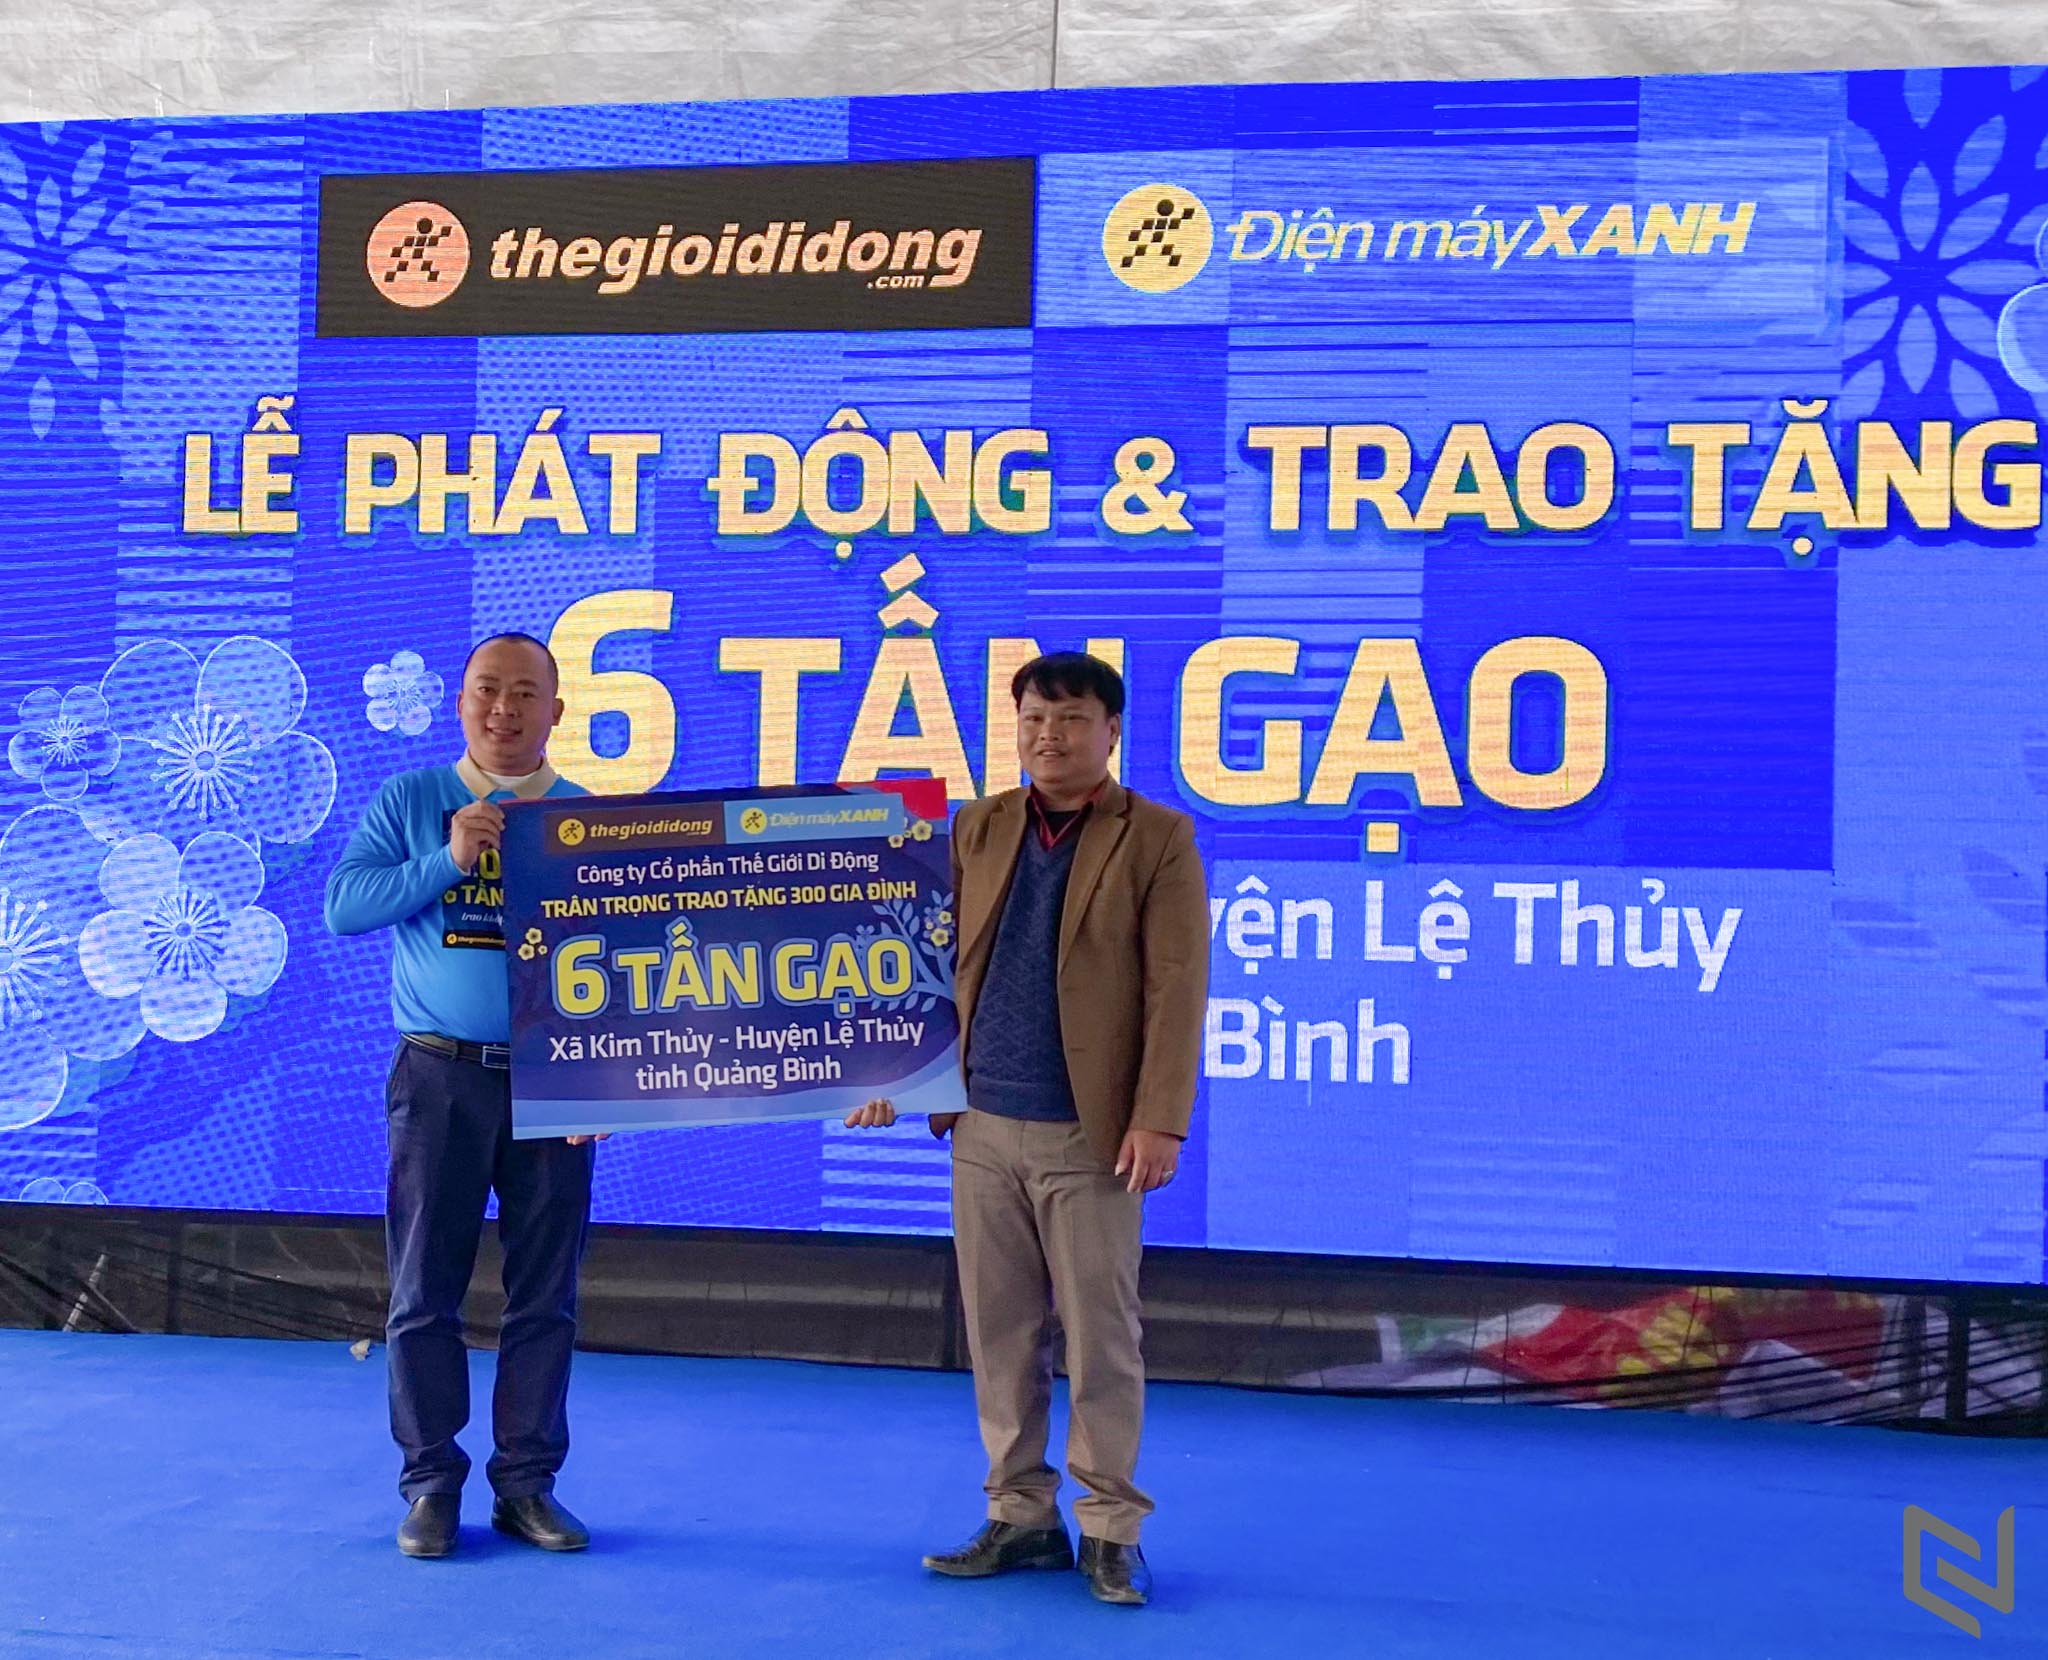 Thế Giới Di Động khởi động chương trình "Tết sẻ chia": trao tặng 1,000 tấn gạo đến 50,000 hộ gia đình trên khắp Việt Nam